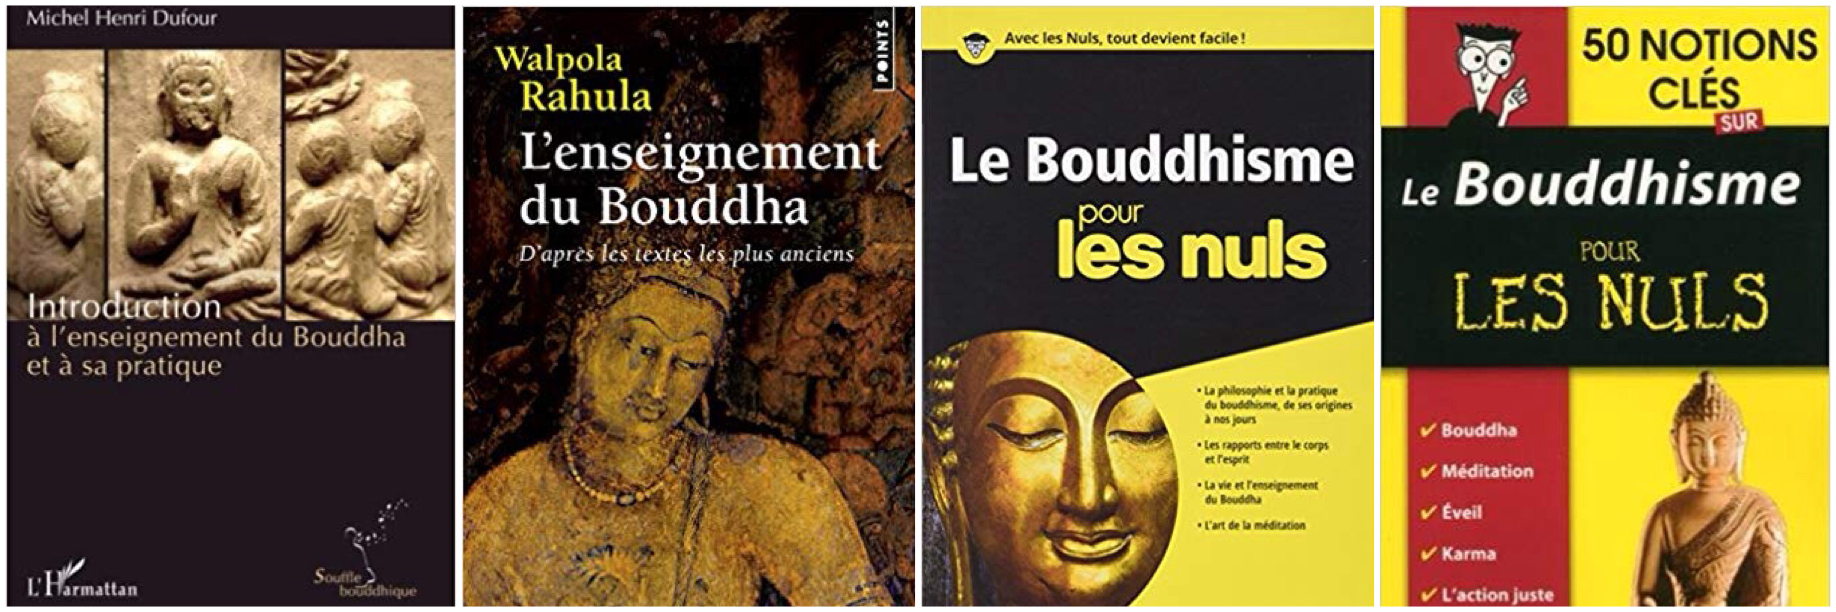 Bouddhisme - Livres Montage 1.jpeg